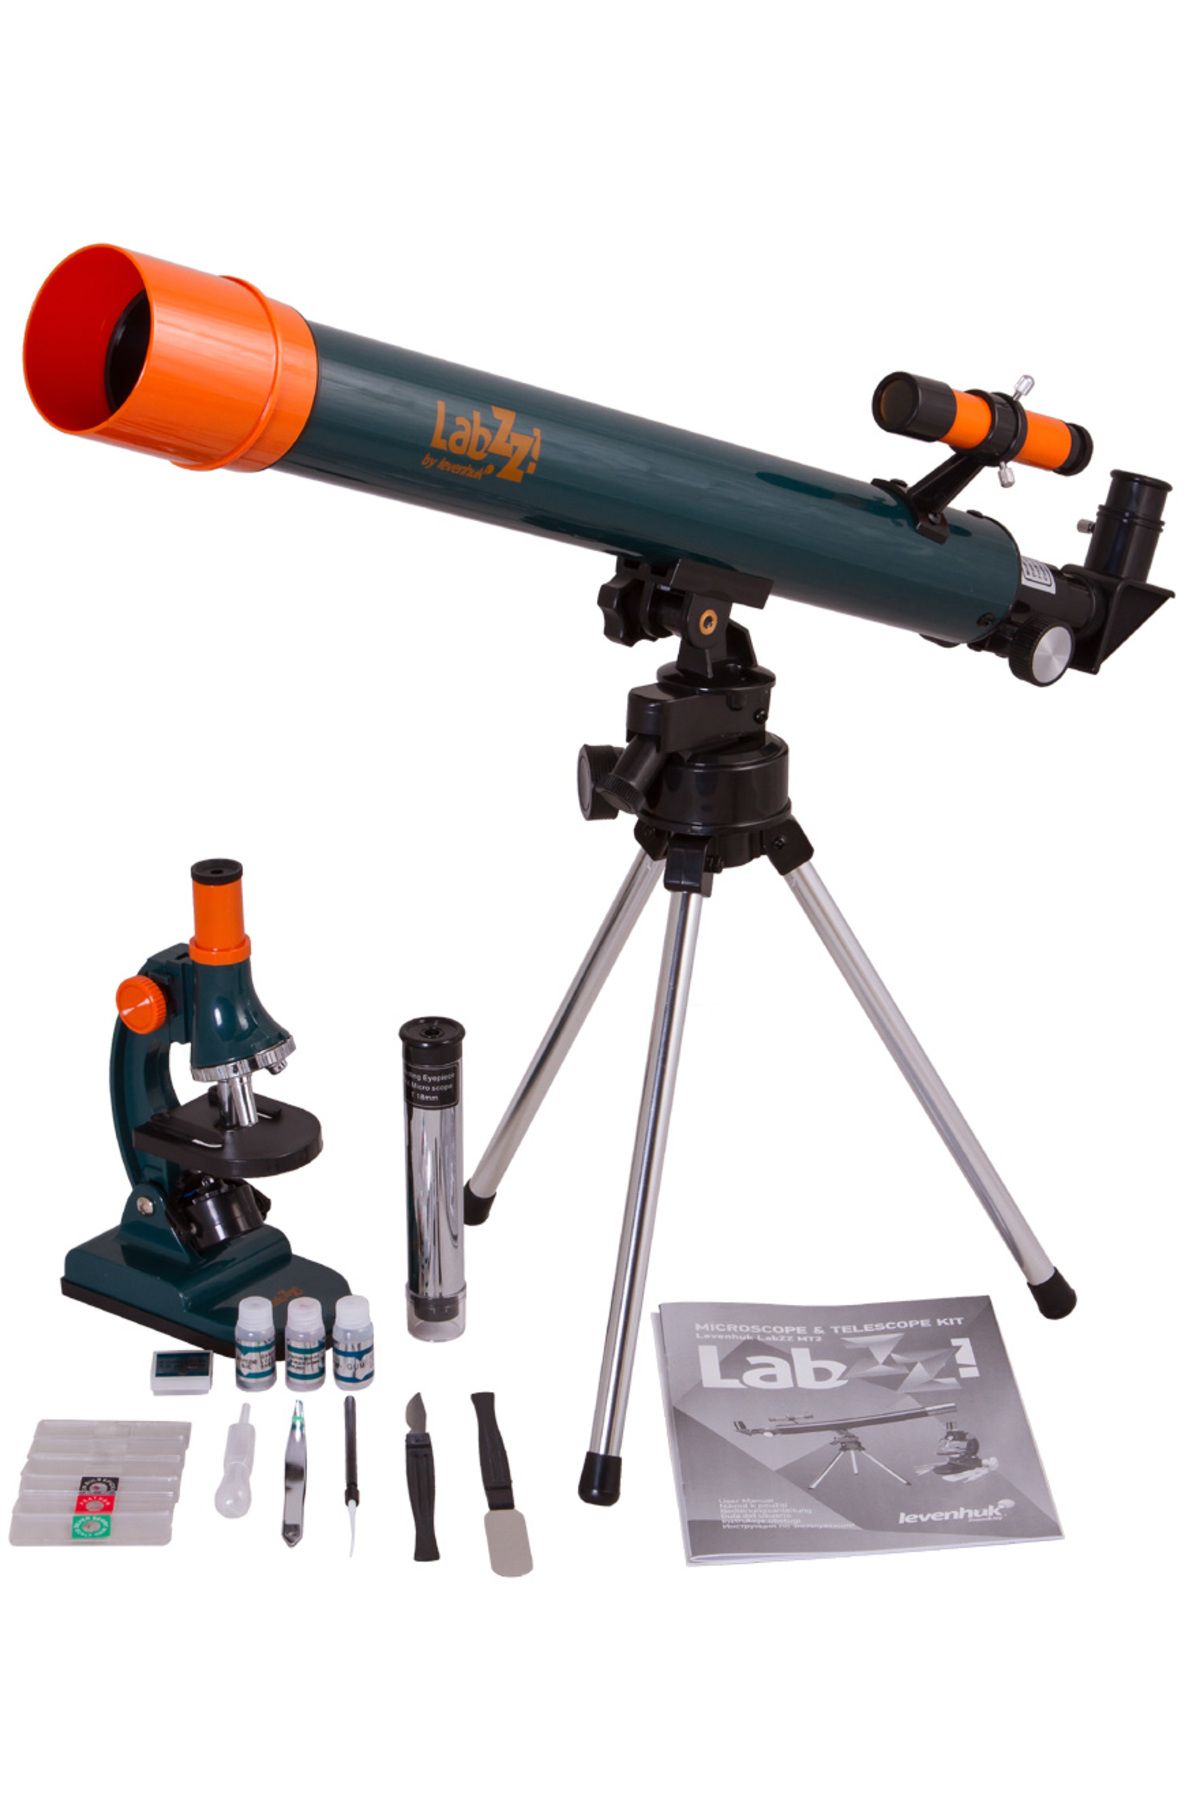 Genel Markalar Labzz Mt2 Mikroskop Ve Teleskop Kiti (2818)